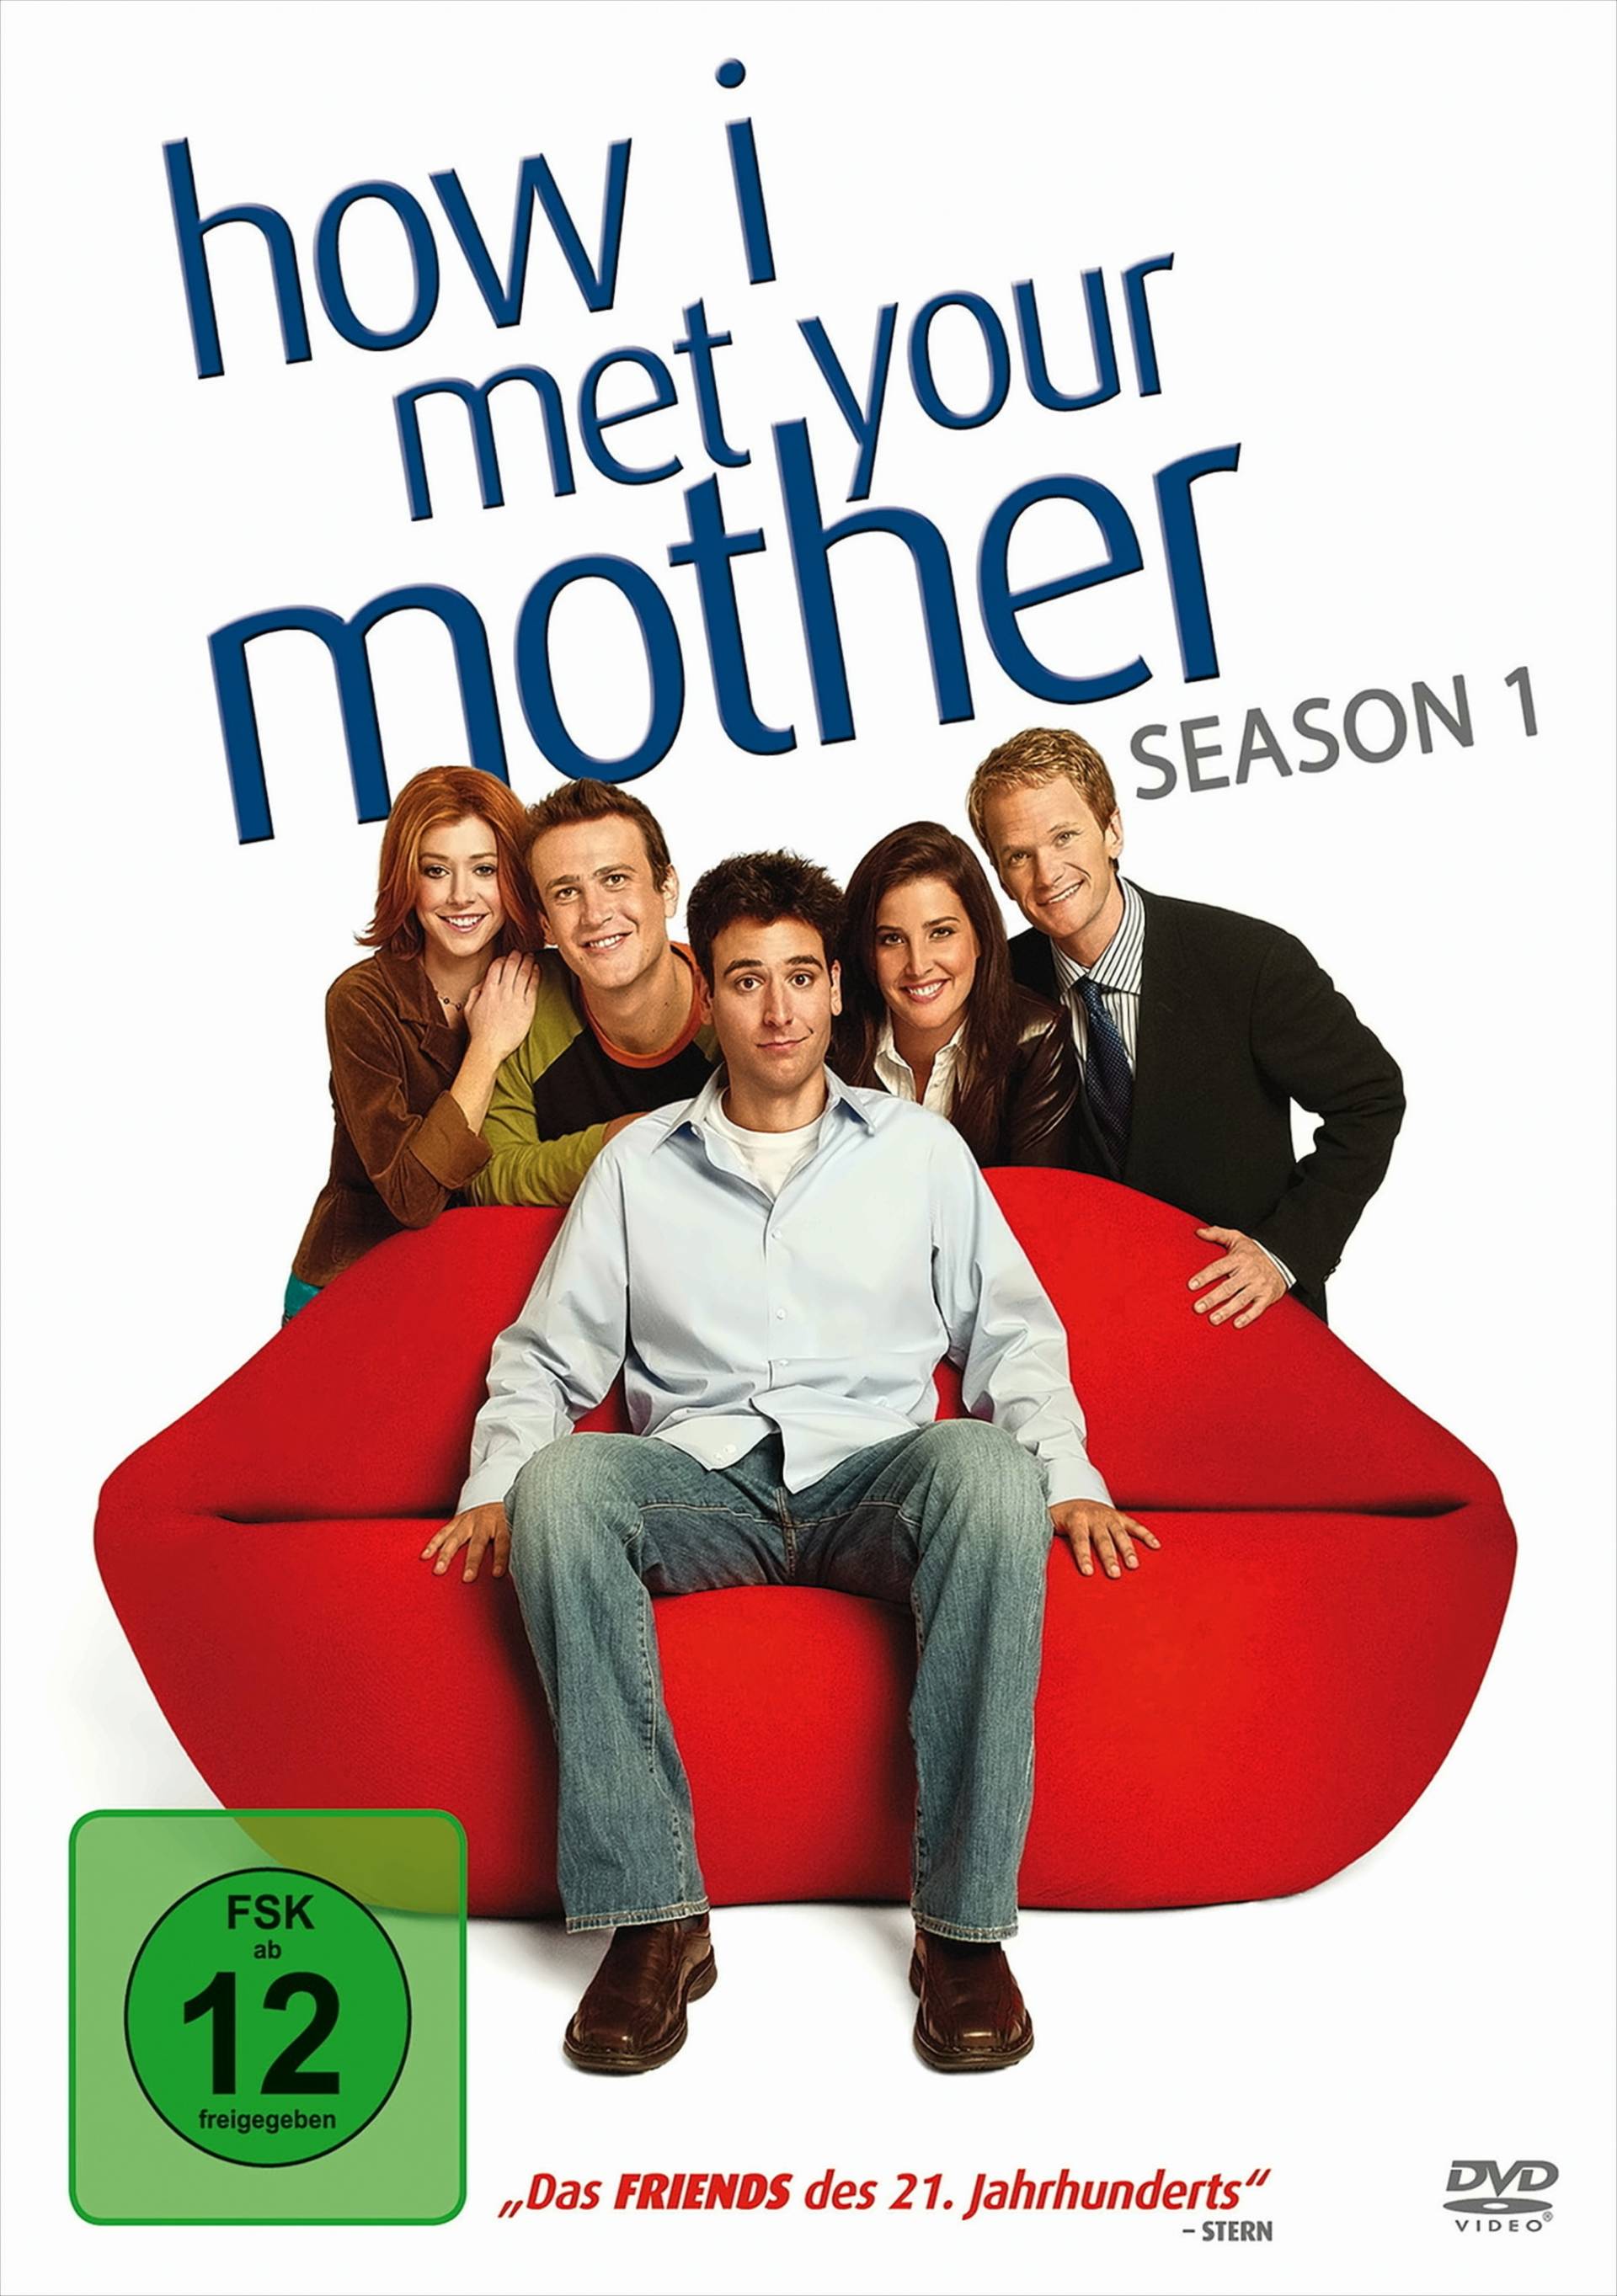 How I Met Your Mother Season 1 von Fox